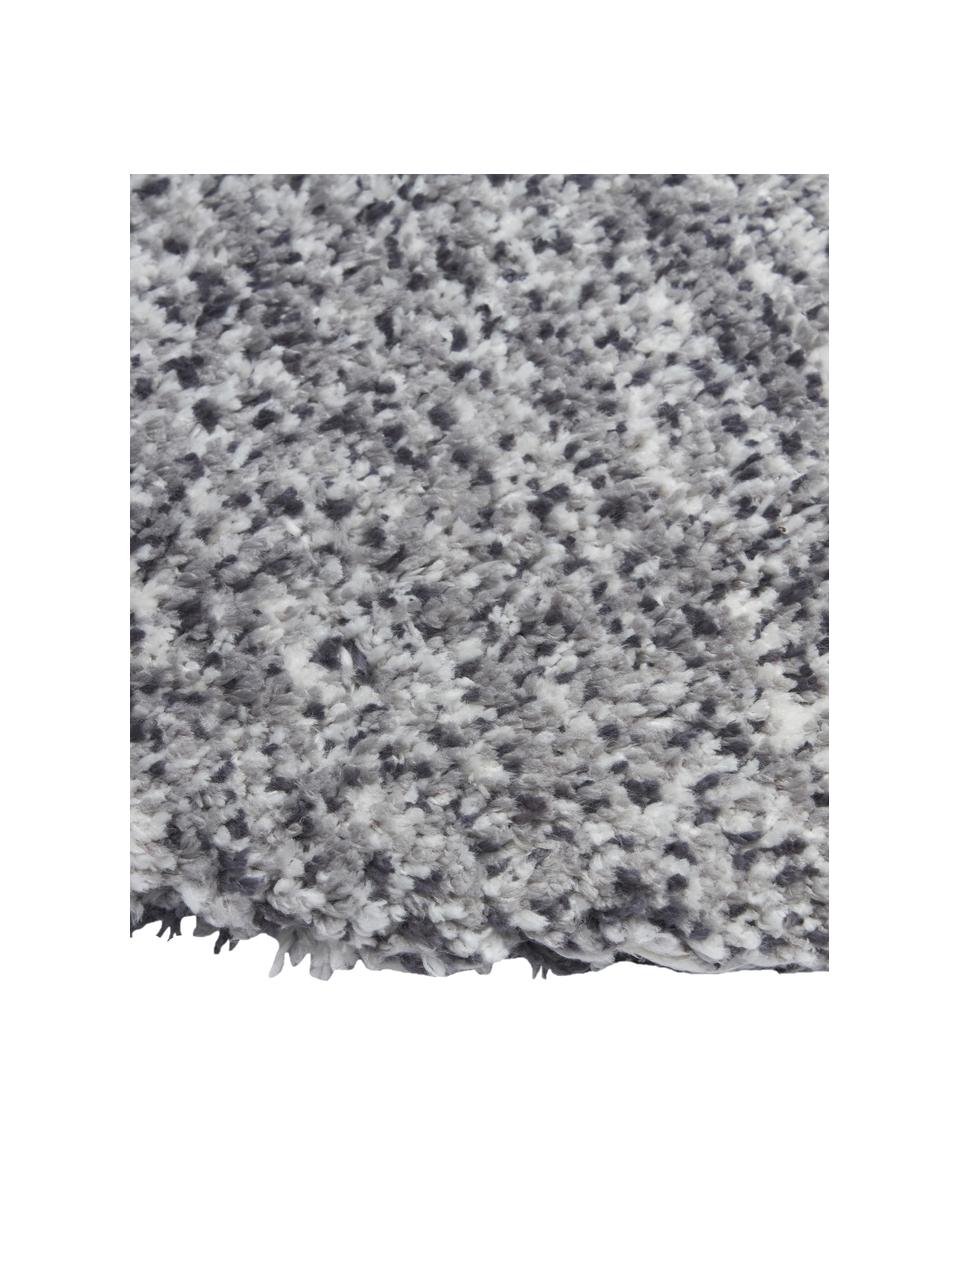 Fluffy rond hoogpolig vloerkleed Marsha in grijs, Grijs, wit, B Ø 120 cm (maat S)